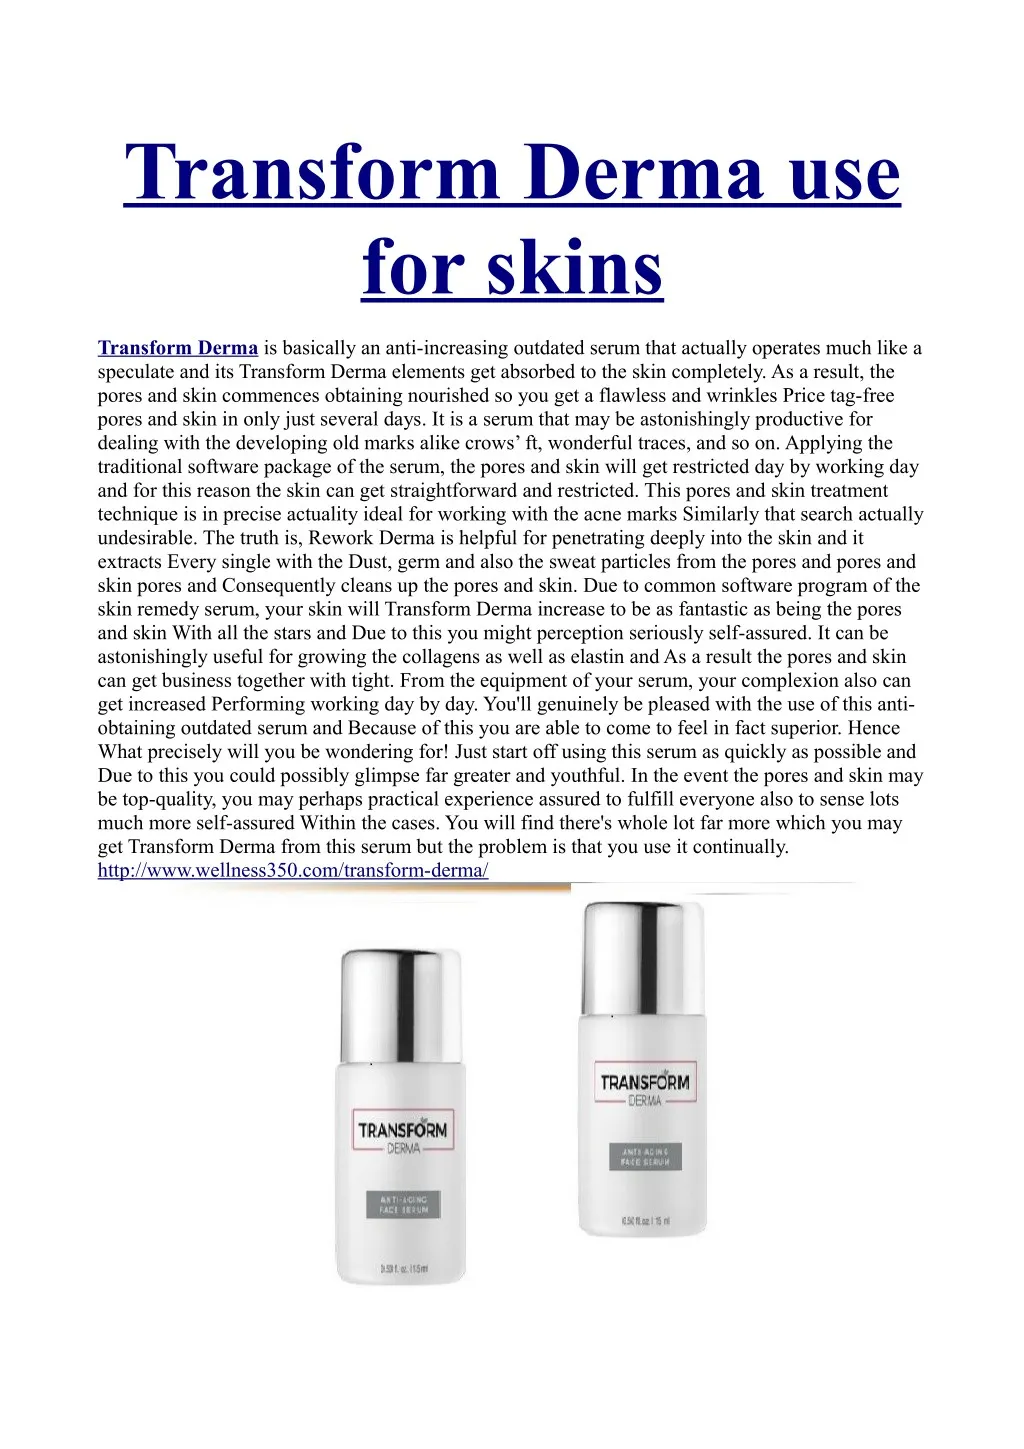 transform derma use for skins